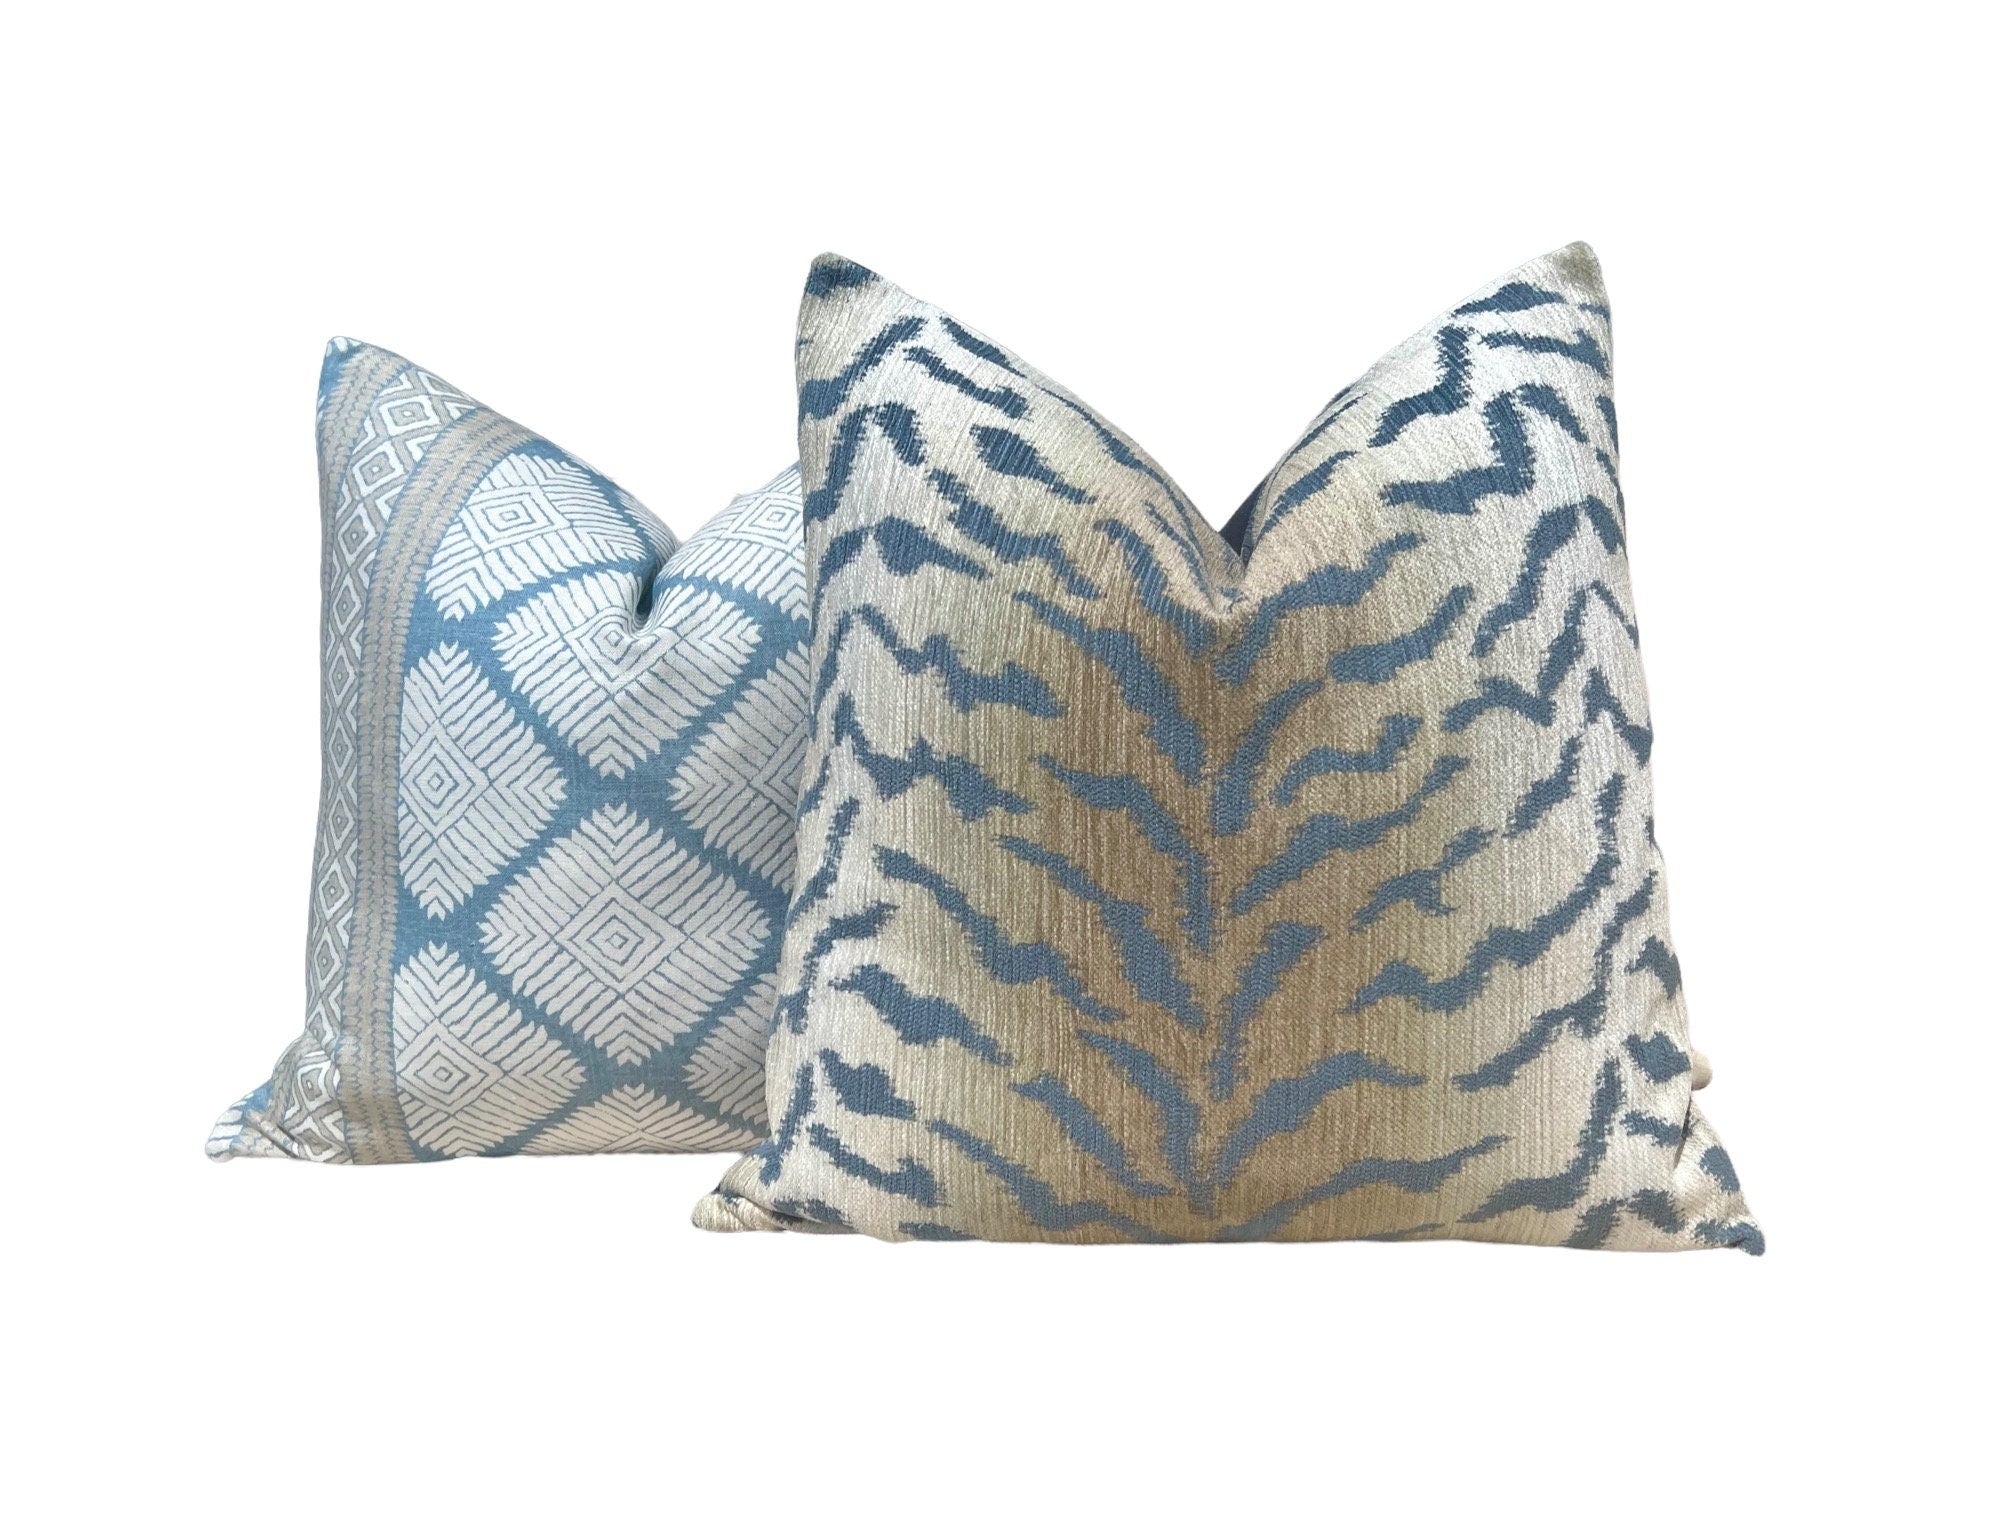 Thibaut Austin Striped Pillow in Spa Blue. High End Pillows, Euro Sham Covers Spa Blue, Designer Pillows, Lumbar Striped Pillow Aqua Blu.